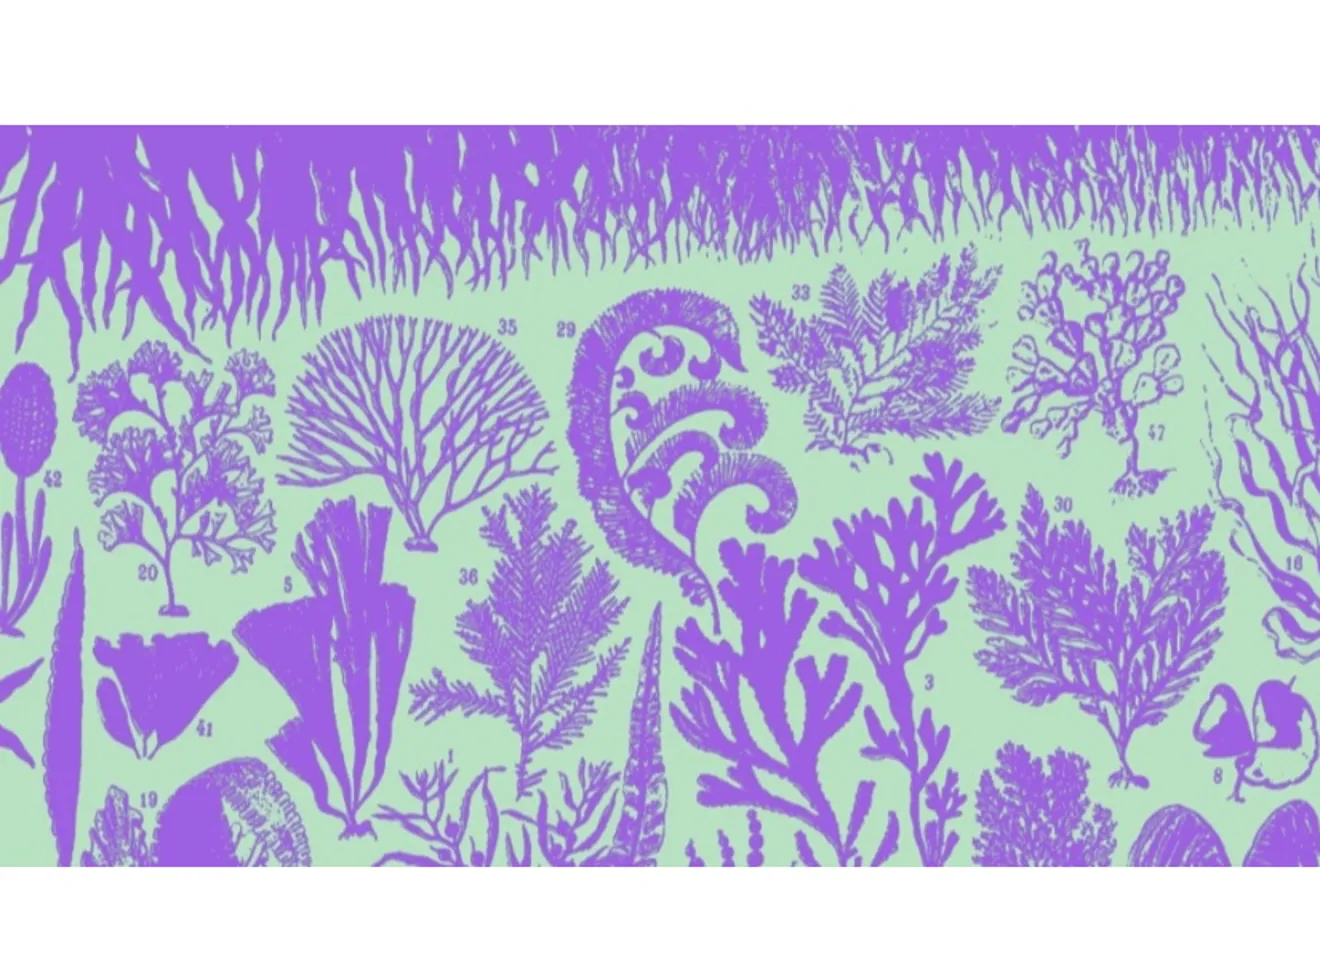 Tegninger av alger i grønn og lila farger